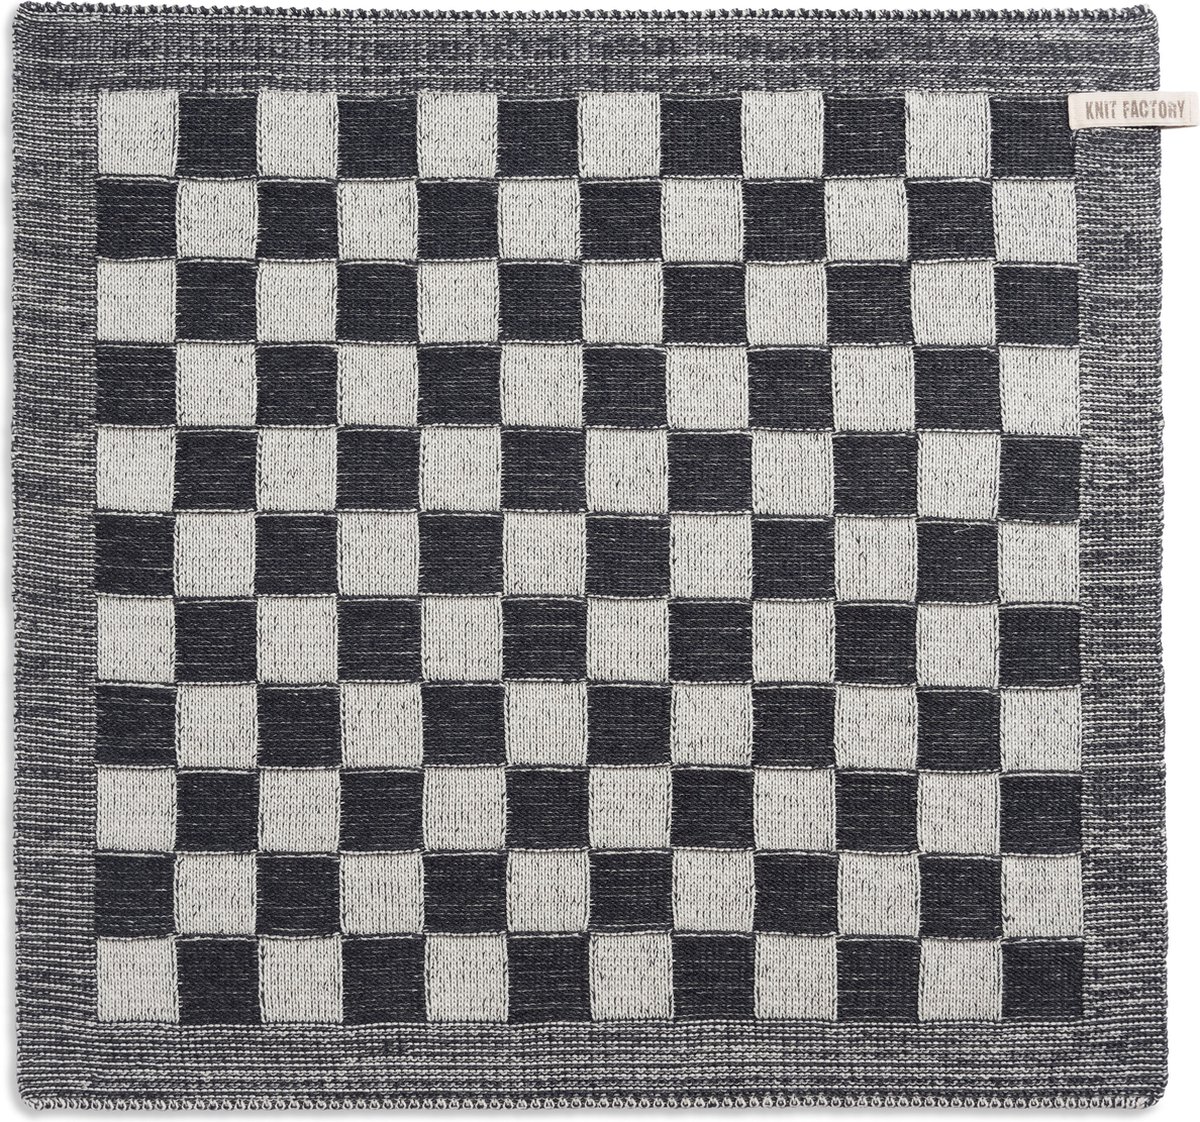 Knit Factory Gebreide Keukendoek - Keukenhanddoek Block - Geblokt motief - Handdoek - Vaatdoek - Keuken doek - Ecru/Antraciet - Traditionele look - 50x50 cm